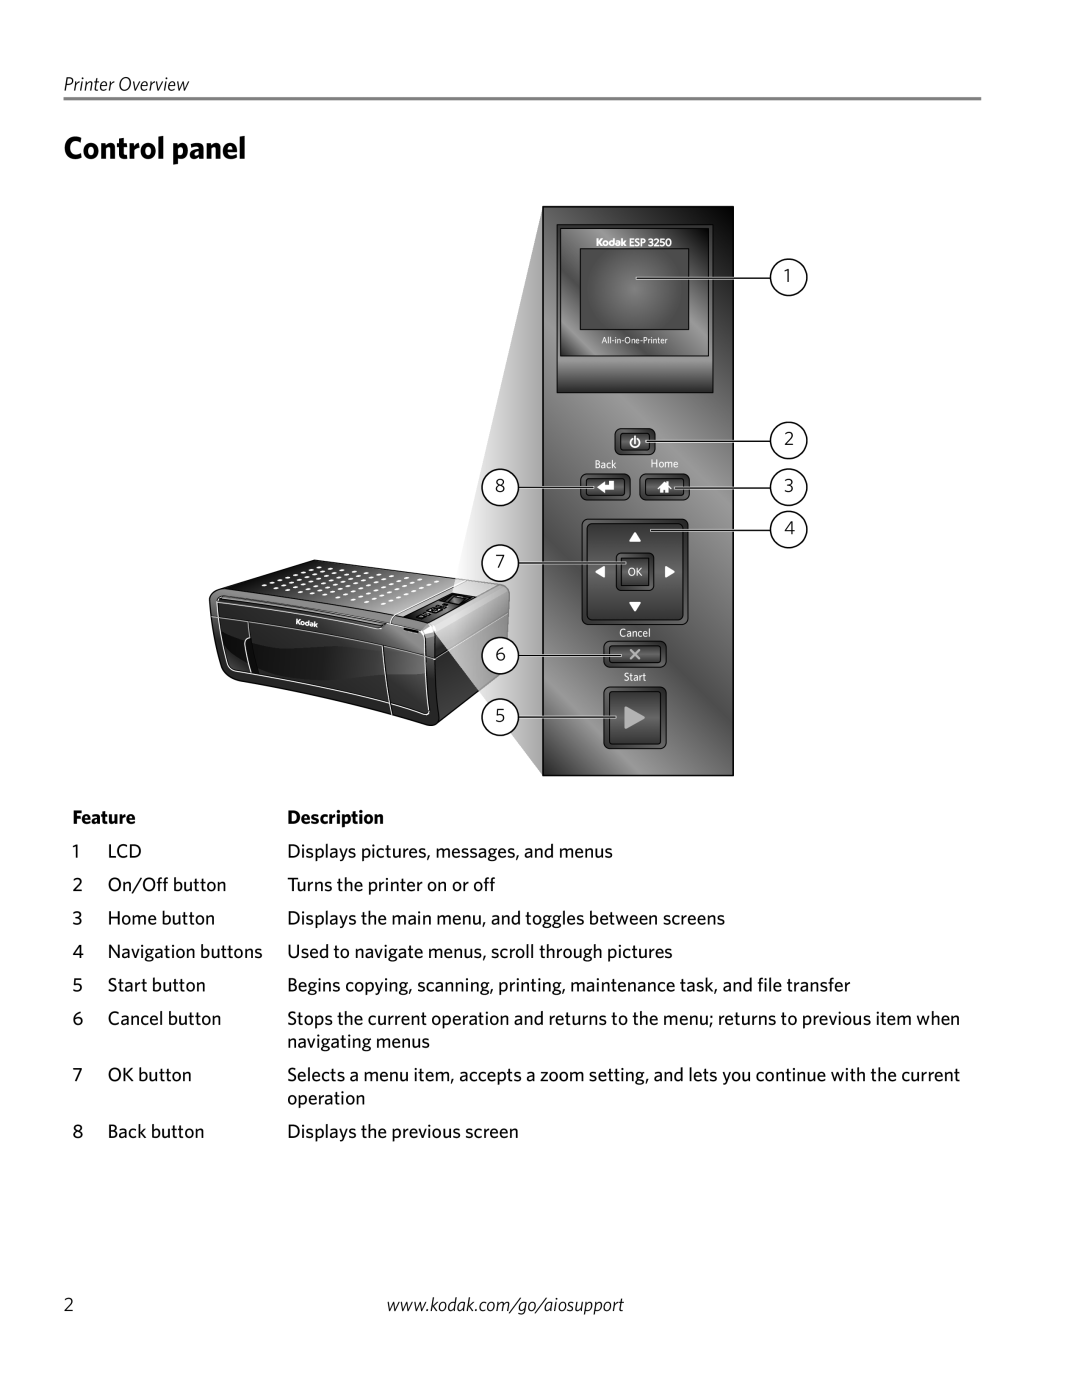 Kodak ESP 3250, ESP 3260, ESP 3200 Series manual Control panel, Printer Overview, Feature, Description 